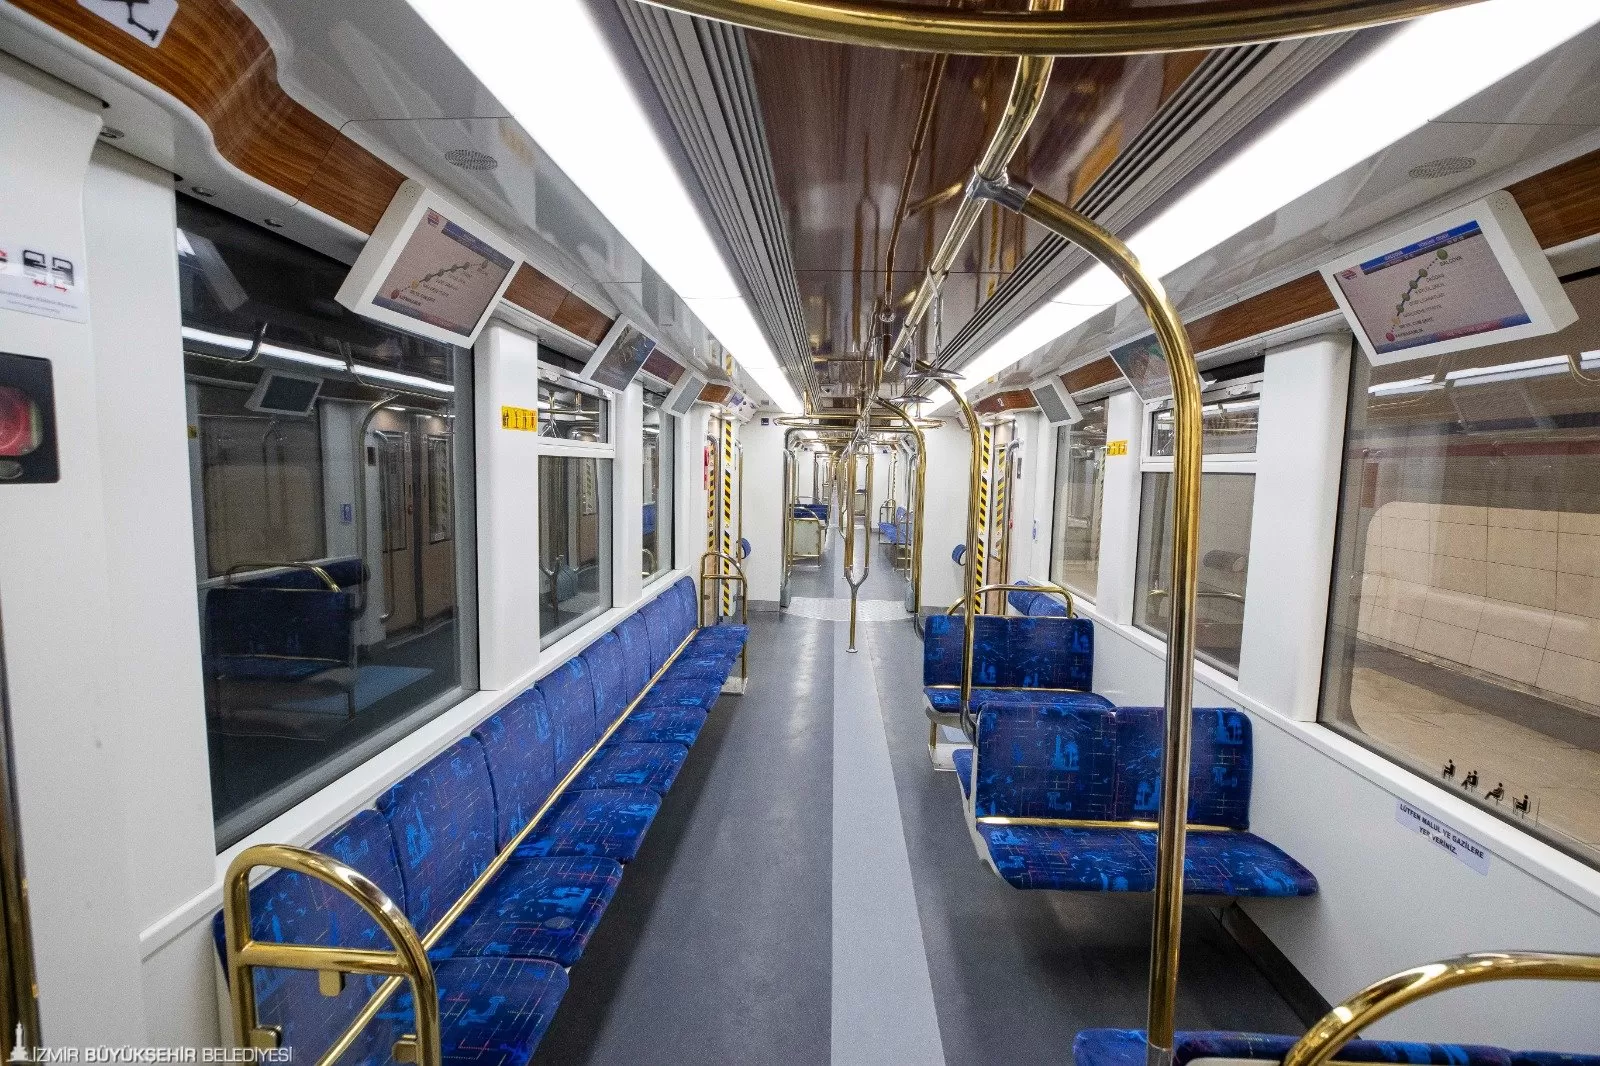 İzmir Büyükşehir Belediyesi tarafından 24 Şubat'ta hizmete alınan Narlıdere Metrosu, 15 Nisan'a kadar ücretsiz yolcu taşıyacak. 